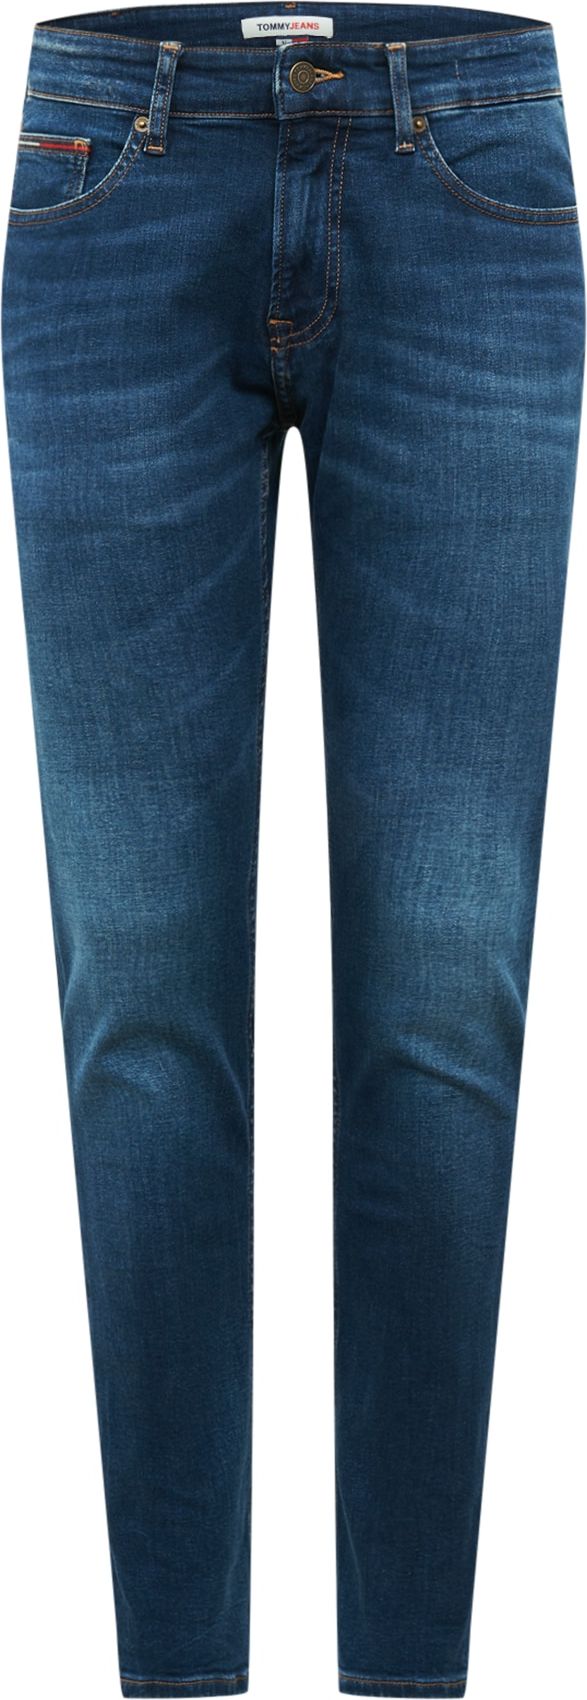 Džíny 'Scanton' Tommy Jeans modrá džínovina